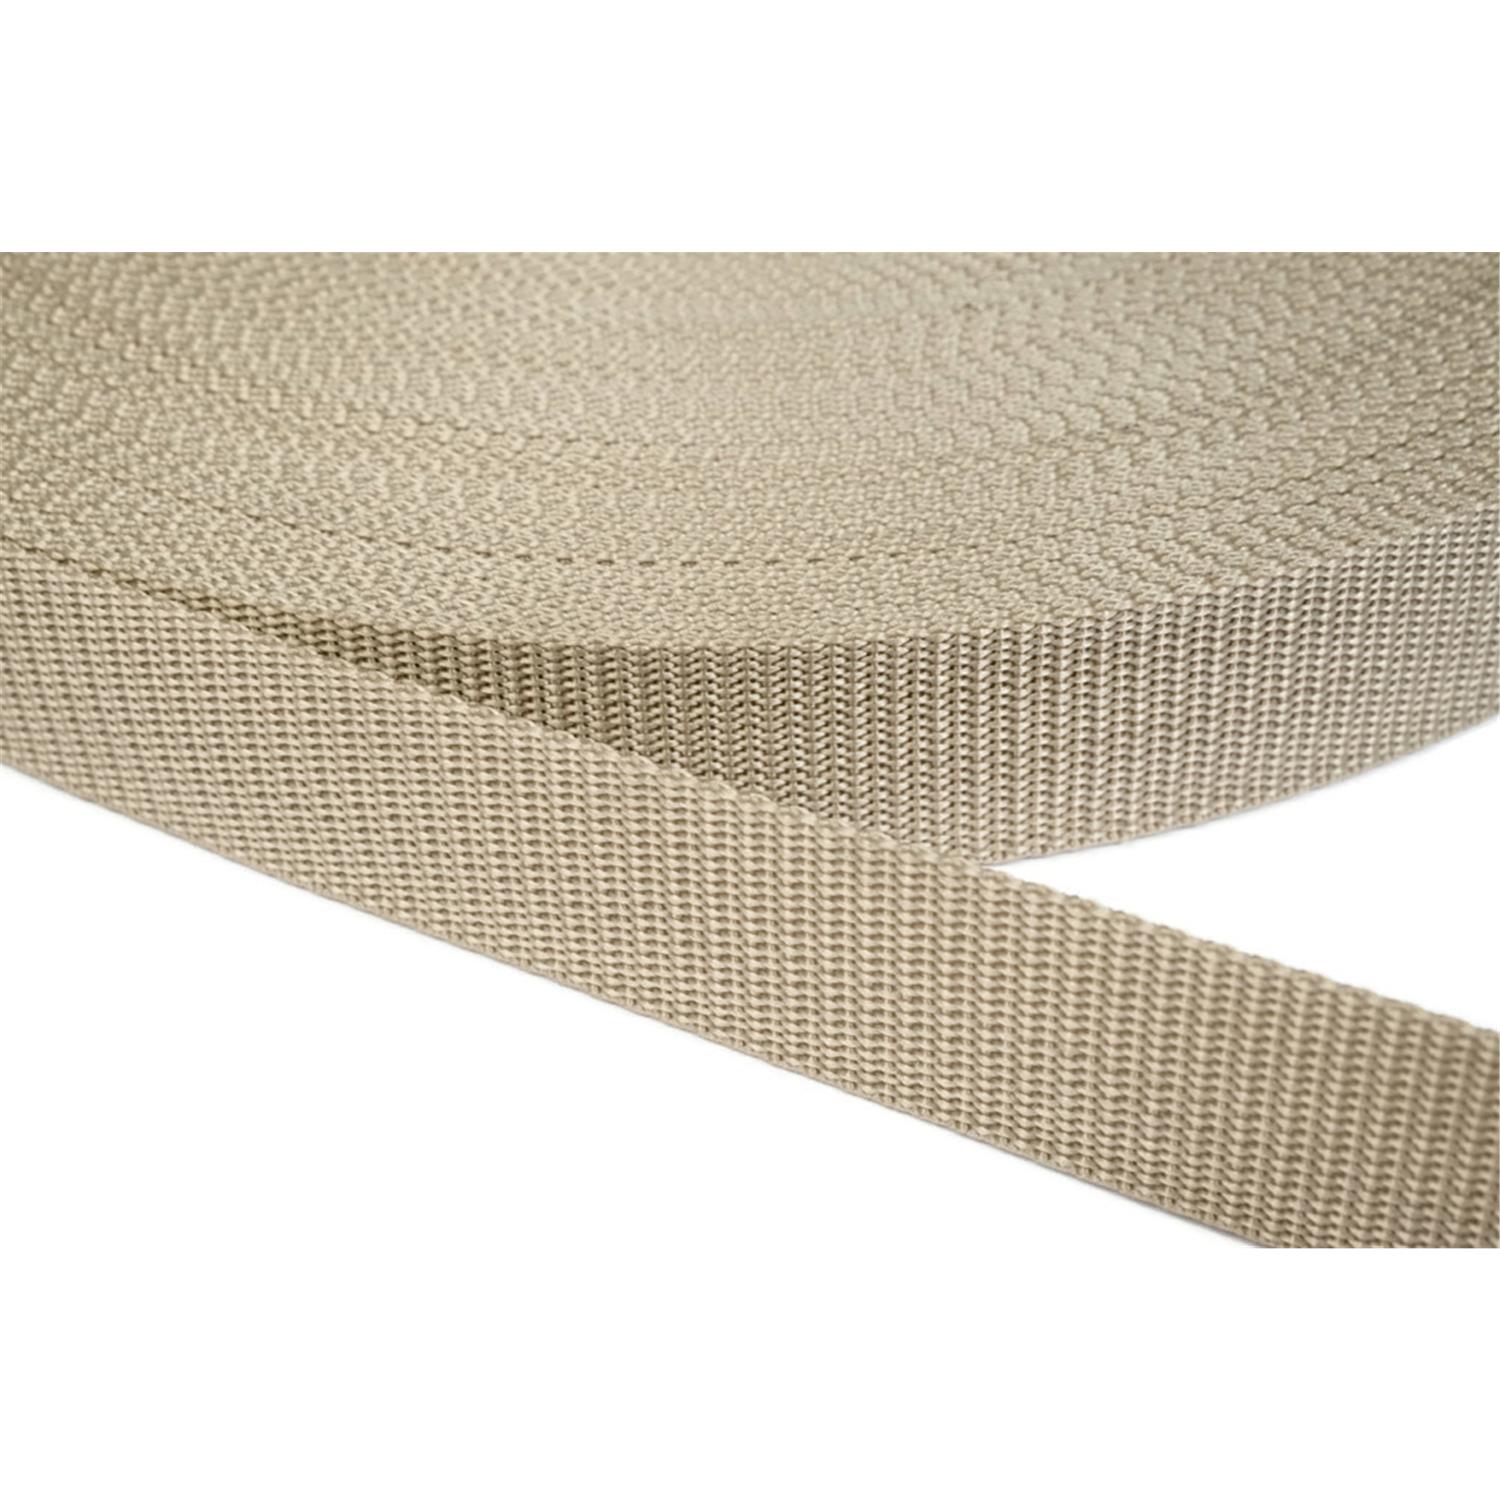 Gurtband 30mm breit aus Polypropylen in 41 Farben 03 - beige 50 Meter